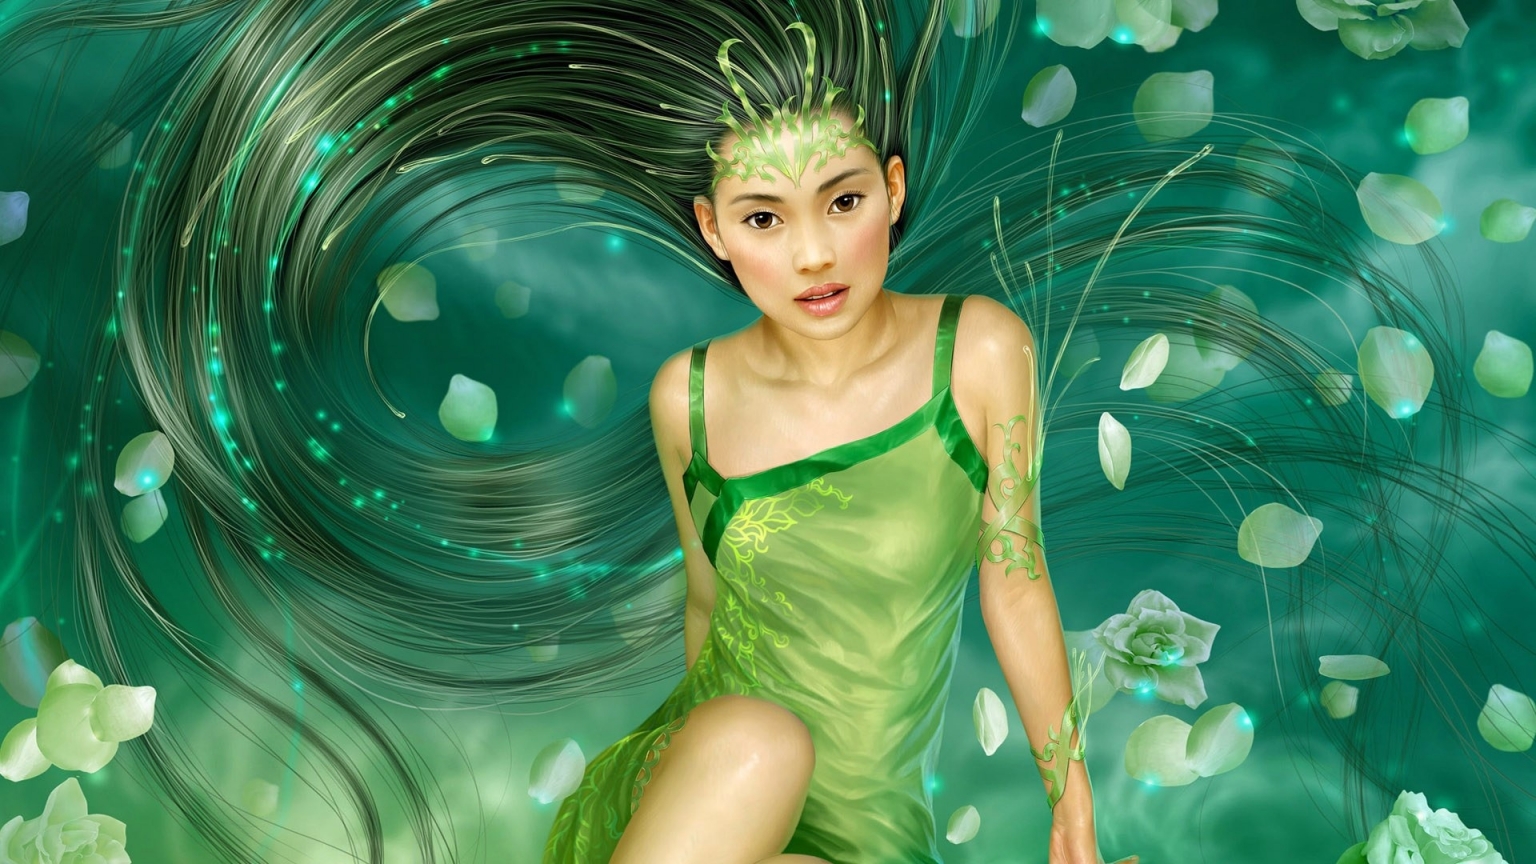 Fantasy Girl Green for 1536 x 864 HDTV resolution